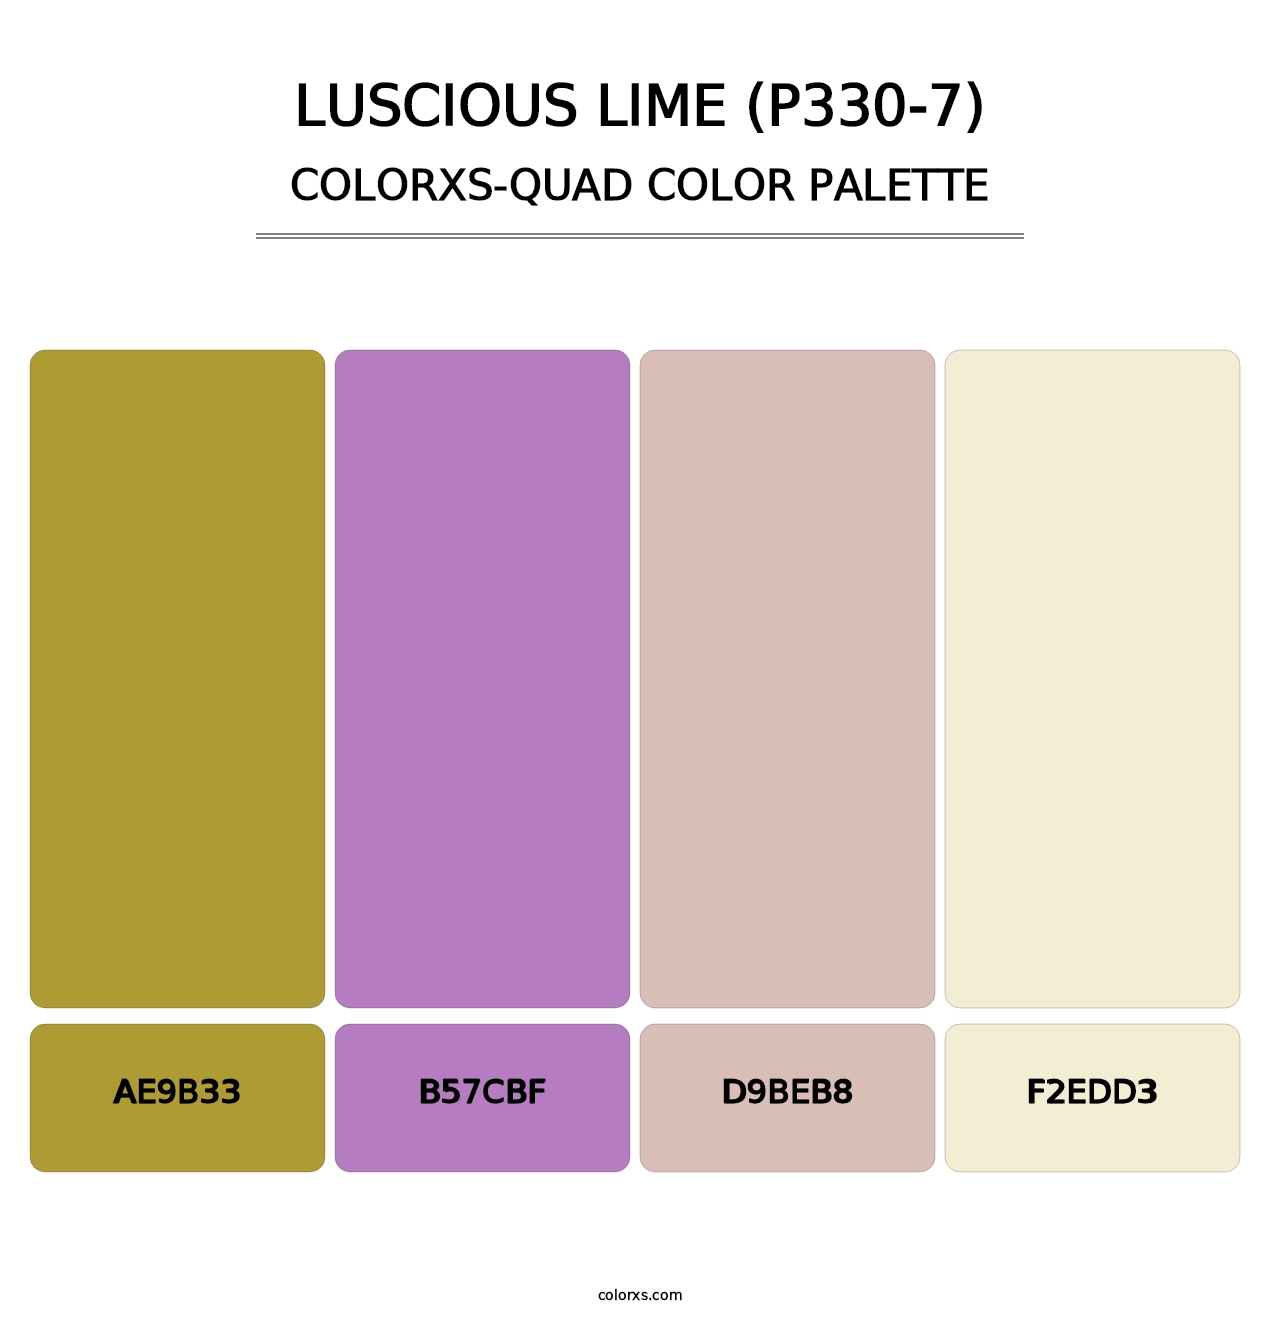 Luscious Lime (P330-7) - Colorxs Quad Palette